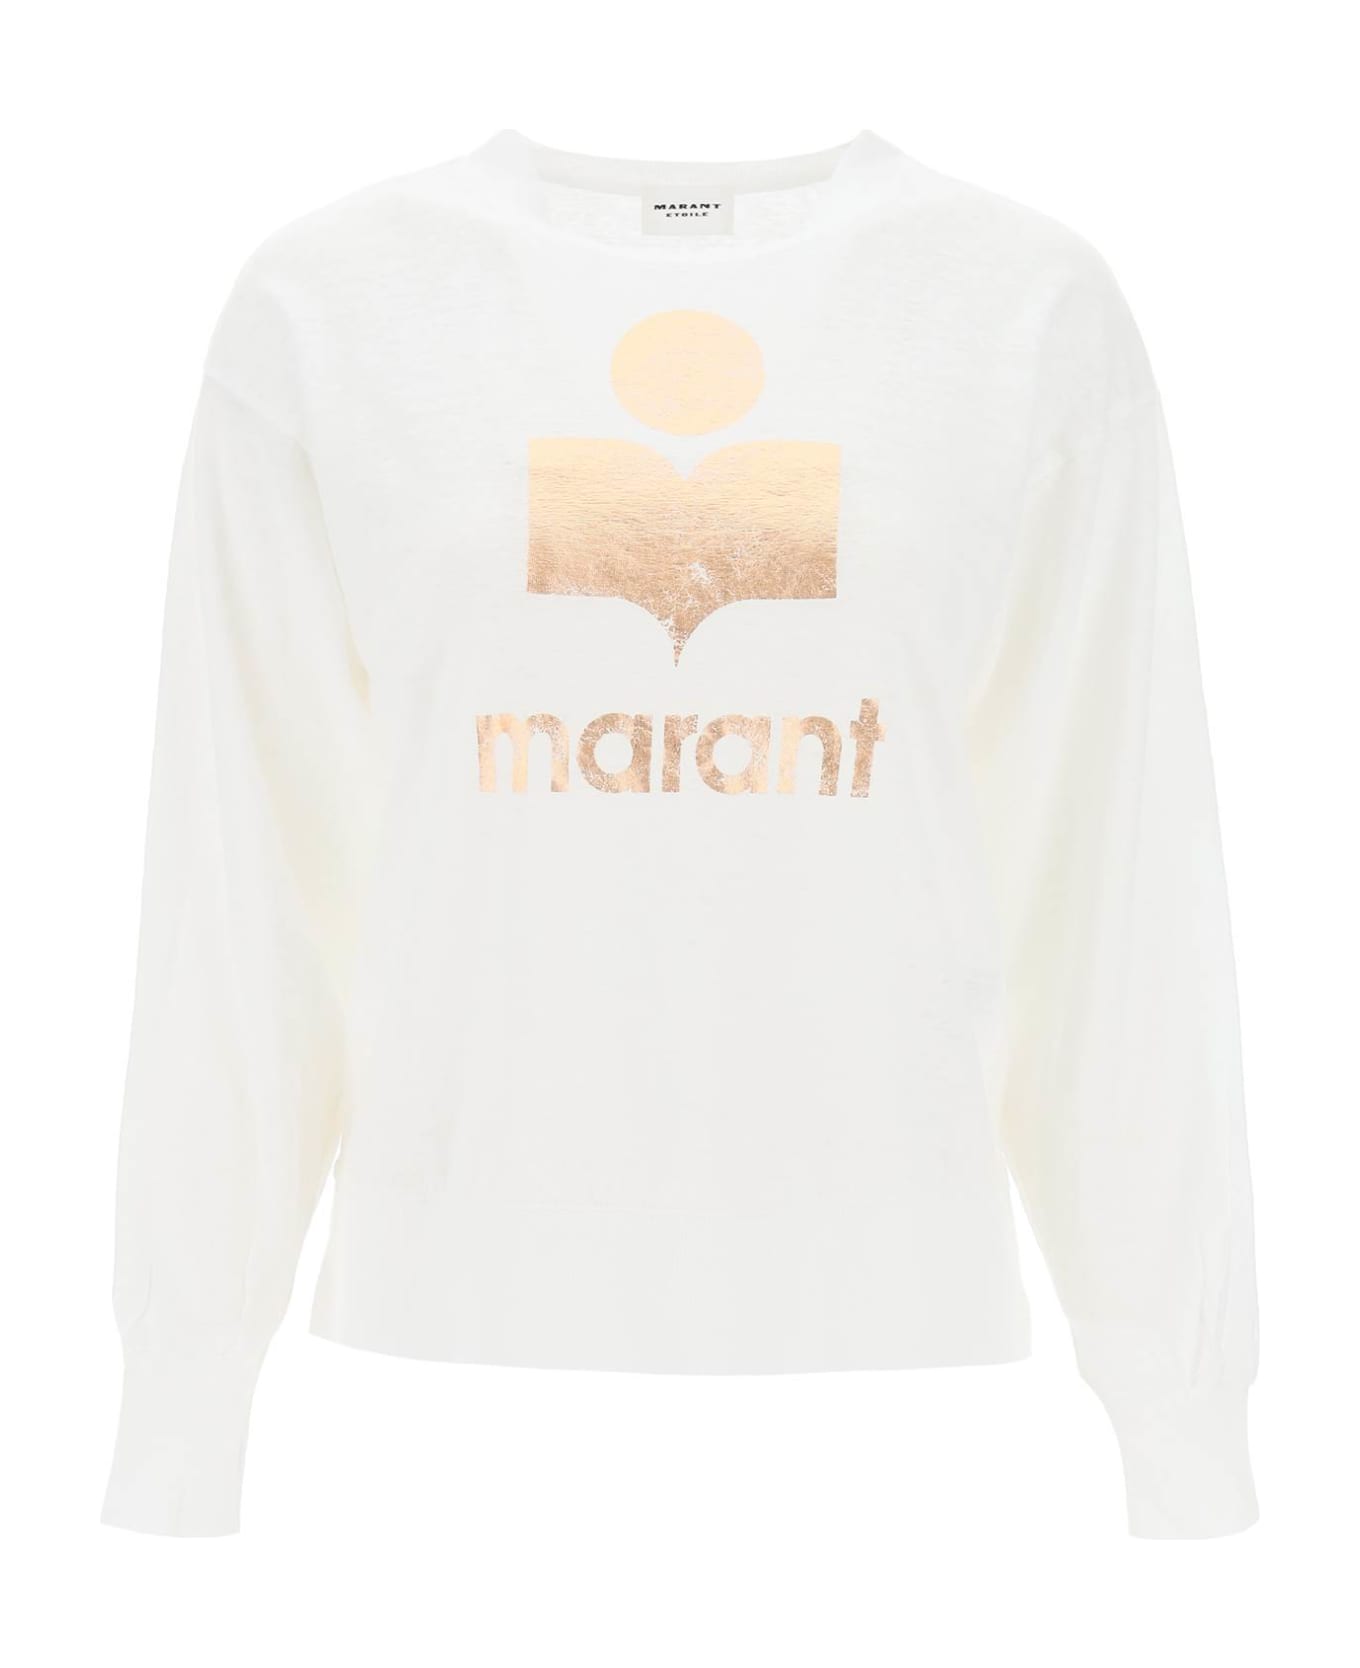 Marant Étoile Klowia T-shirt With Metallic Logo Print - WHITE ROSEGOLD (White)